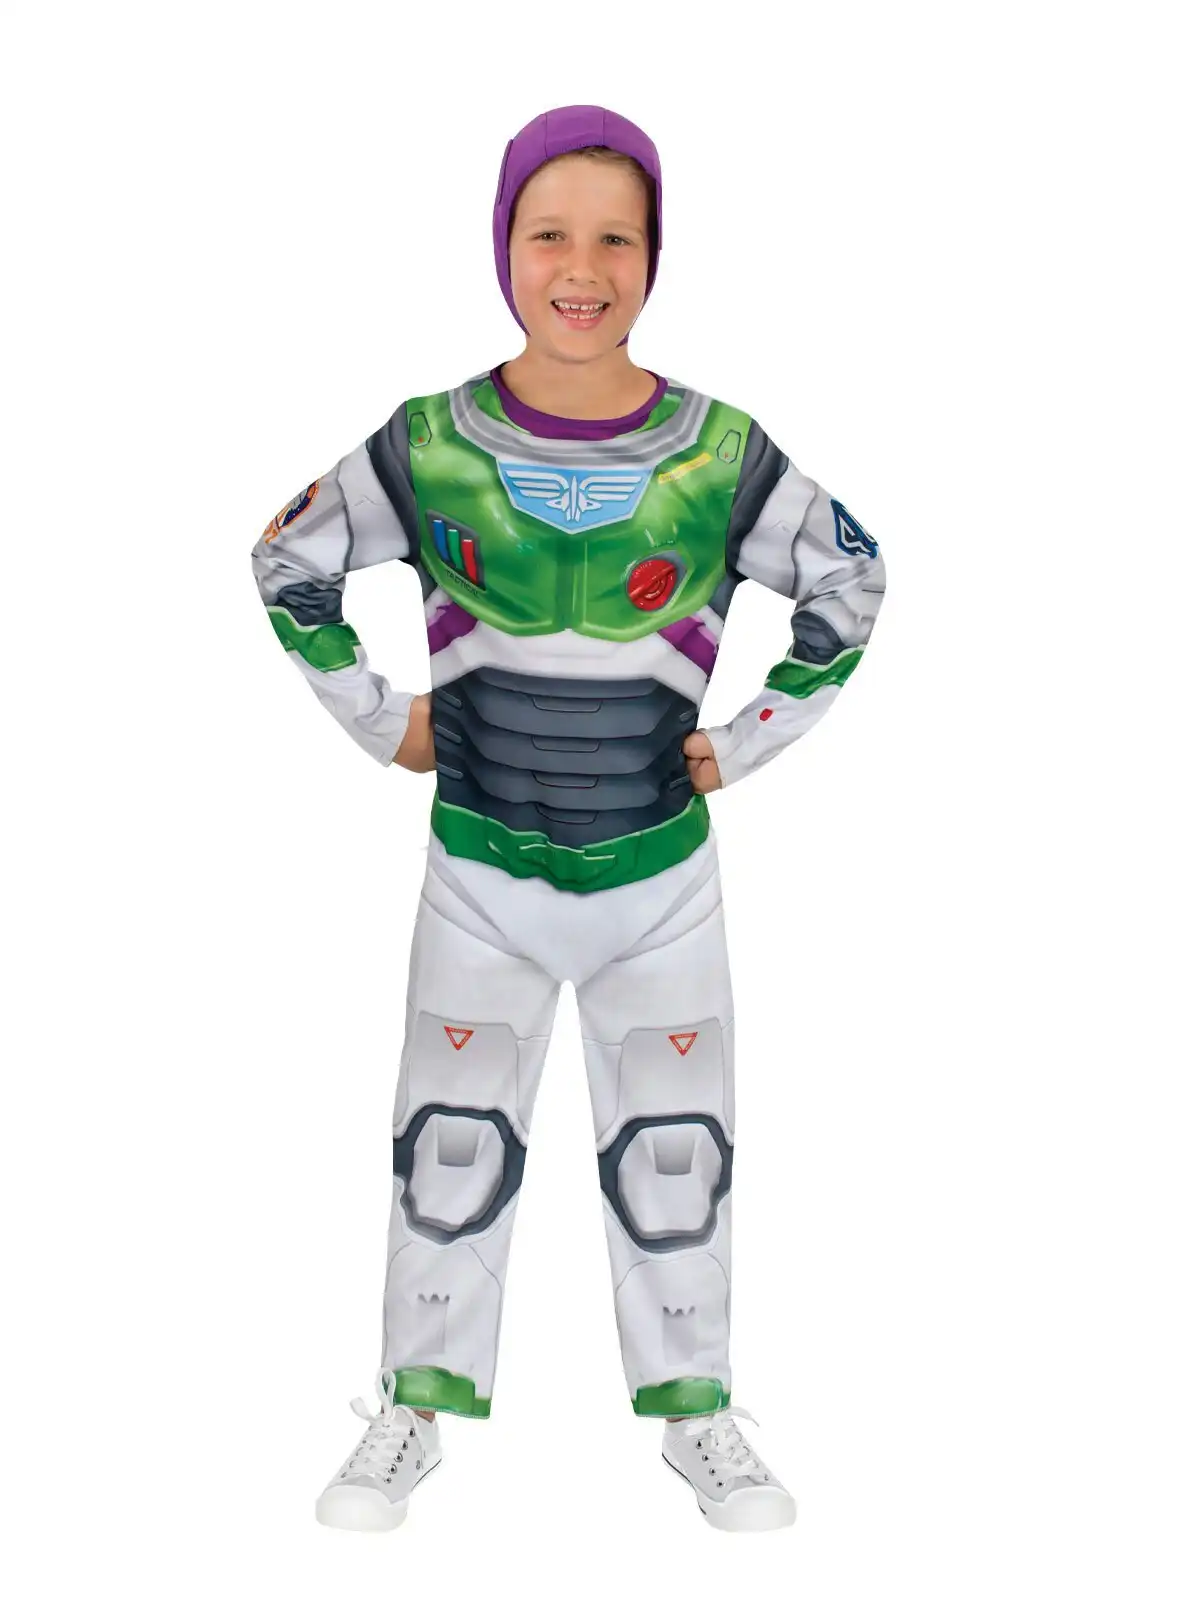 Disney Pixar Buzz Classic Lightyear Movie Dress Up Costume Kids/Boys Size 6-8